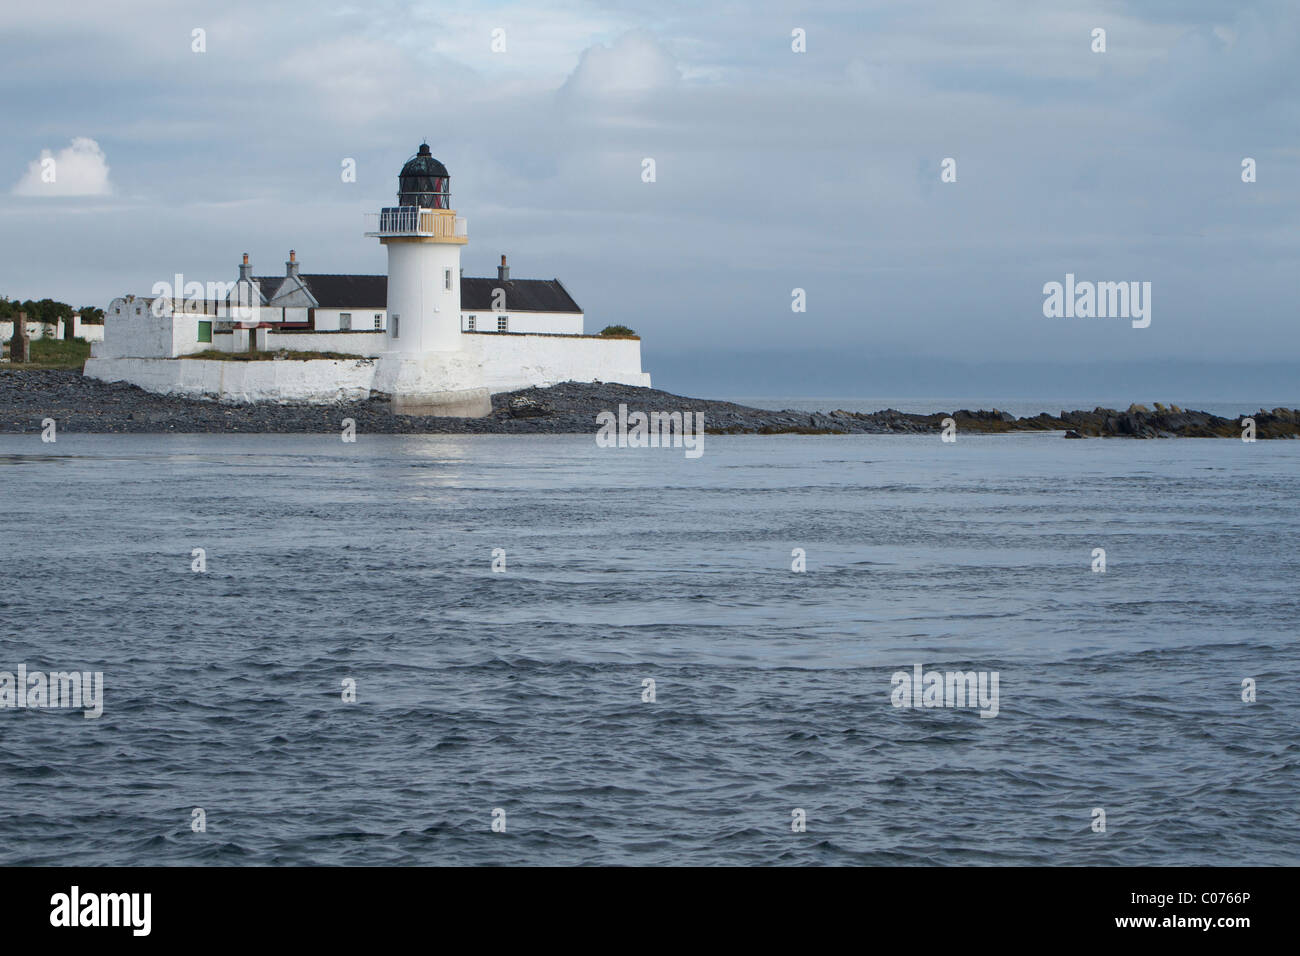 Lighthouse, Scotland, United Kingdom, Europe Stock Photo